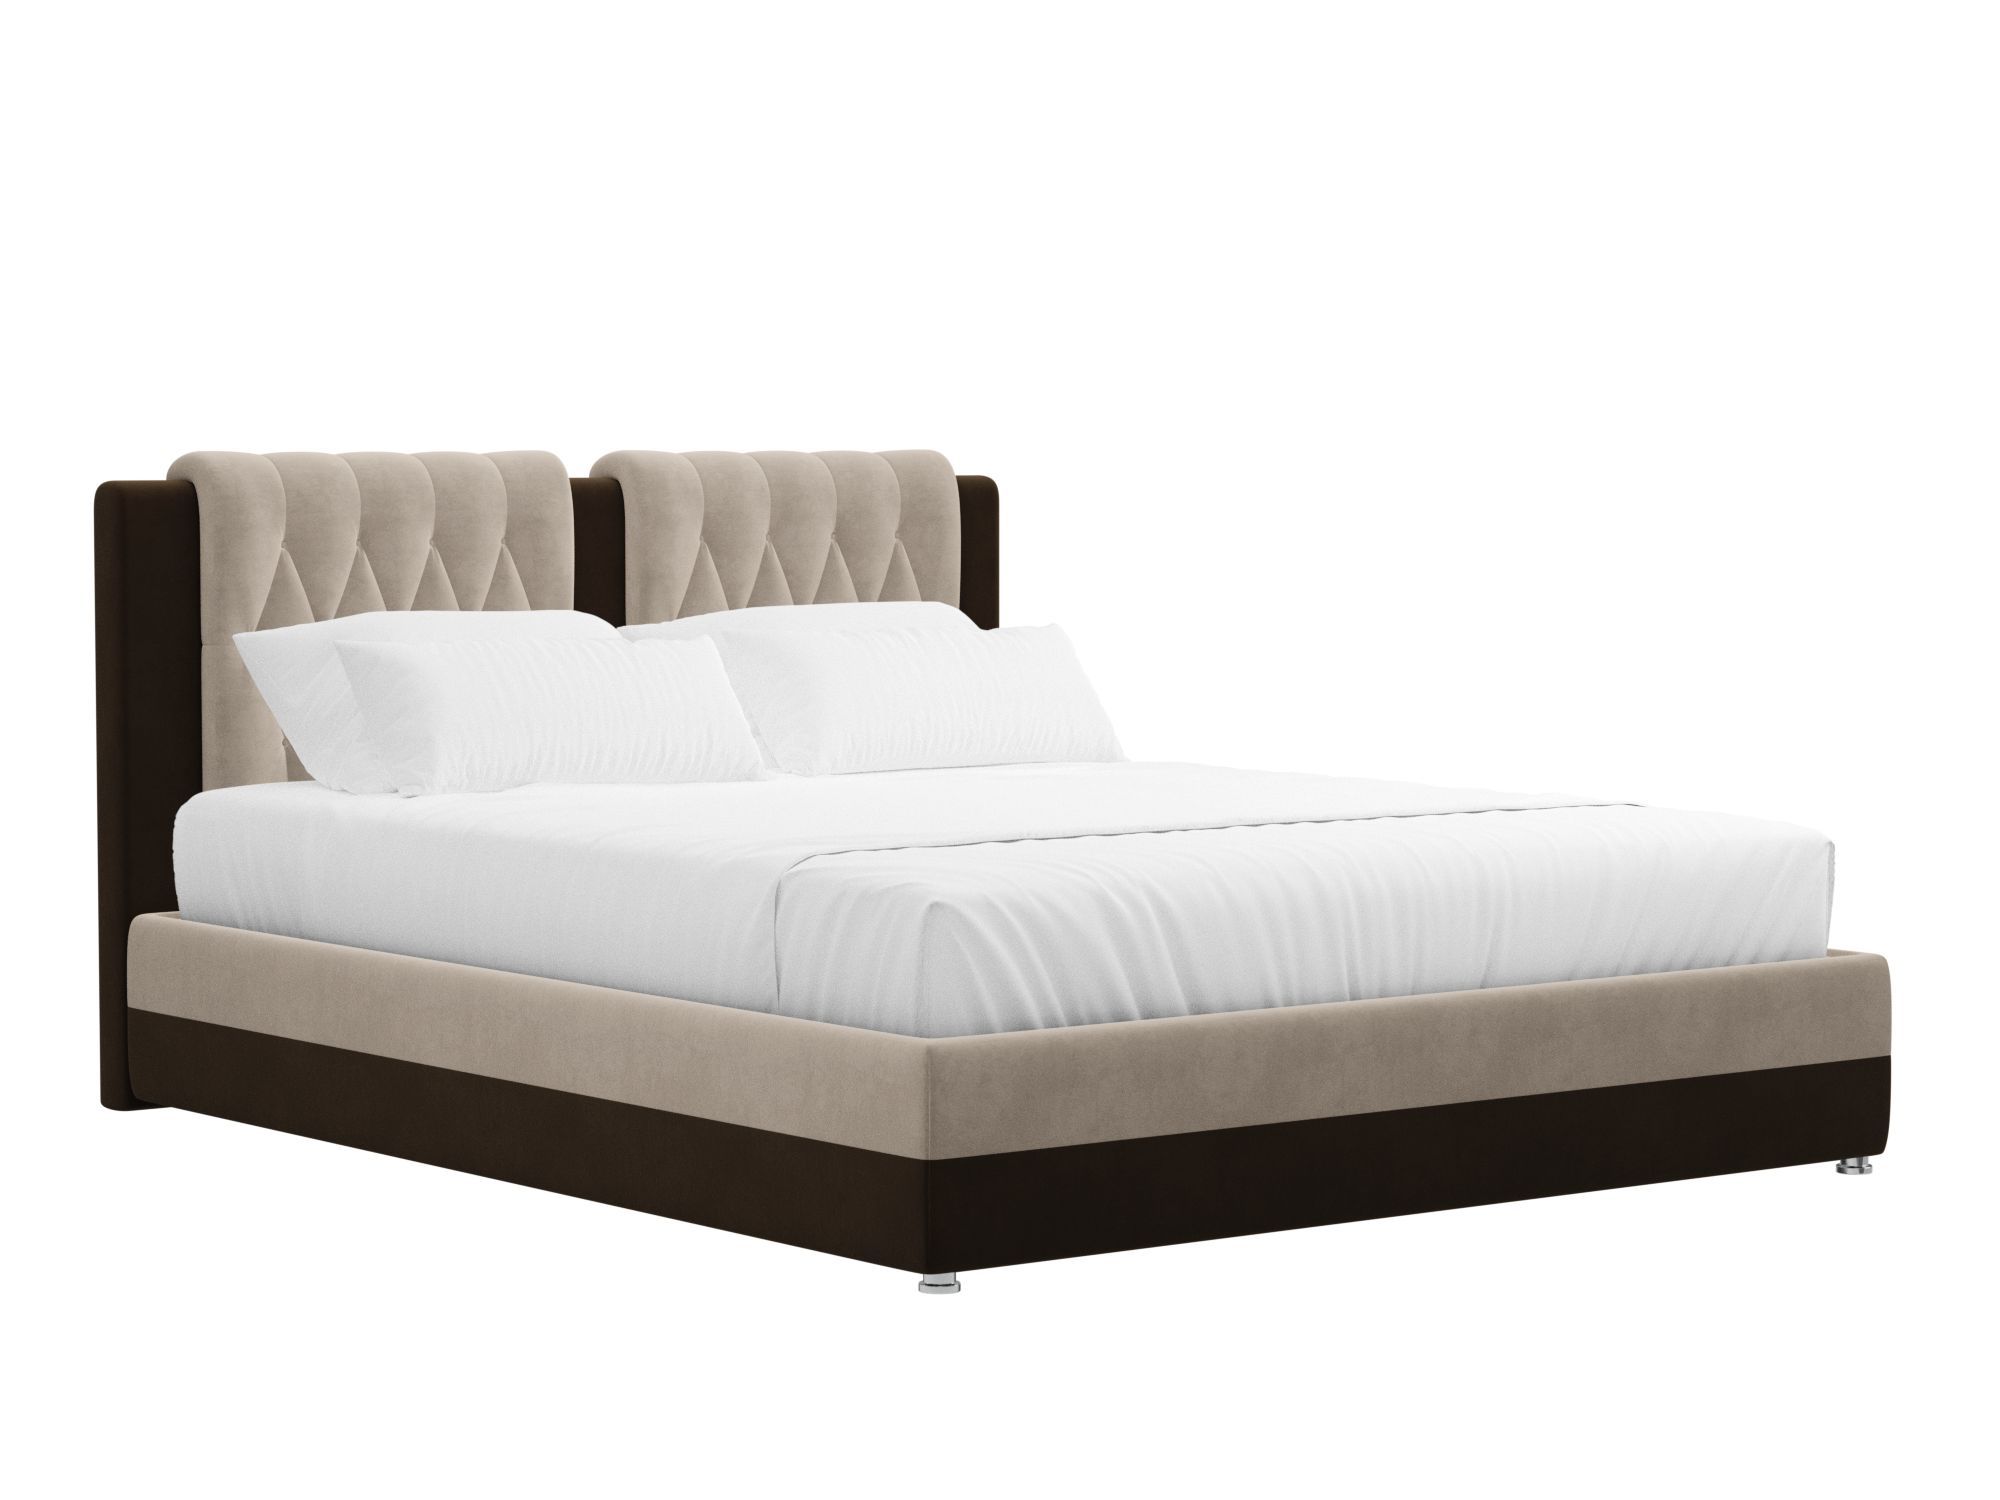 Кровать Камилла (160x200) Бежевый, Коричневый, ЛДСП кровать с реечным настилом сакура light 160х200 коричневый темный бежевый лдсп